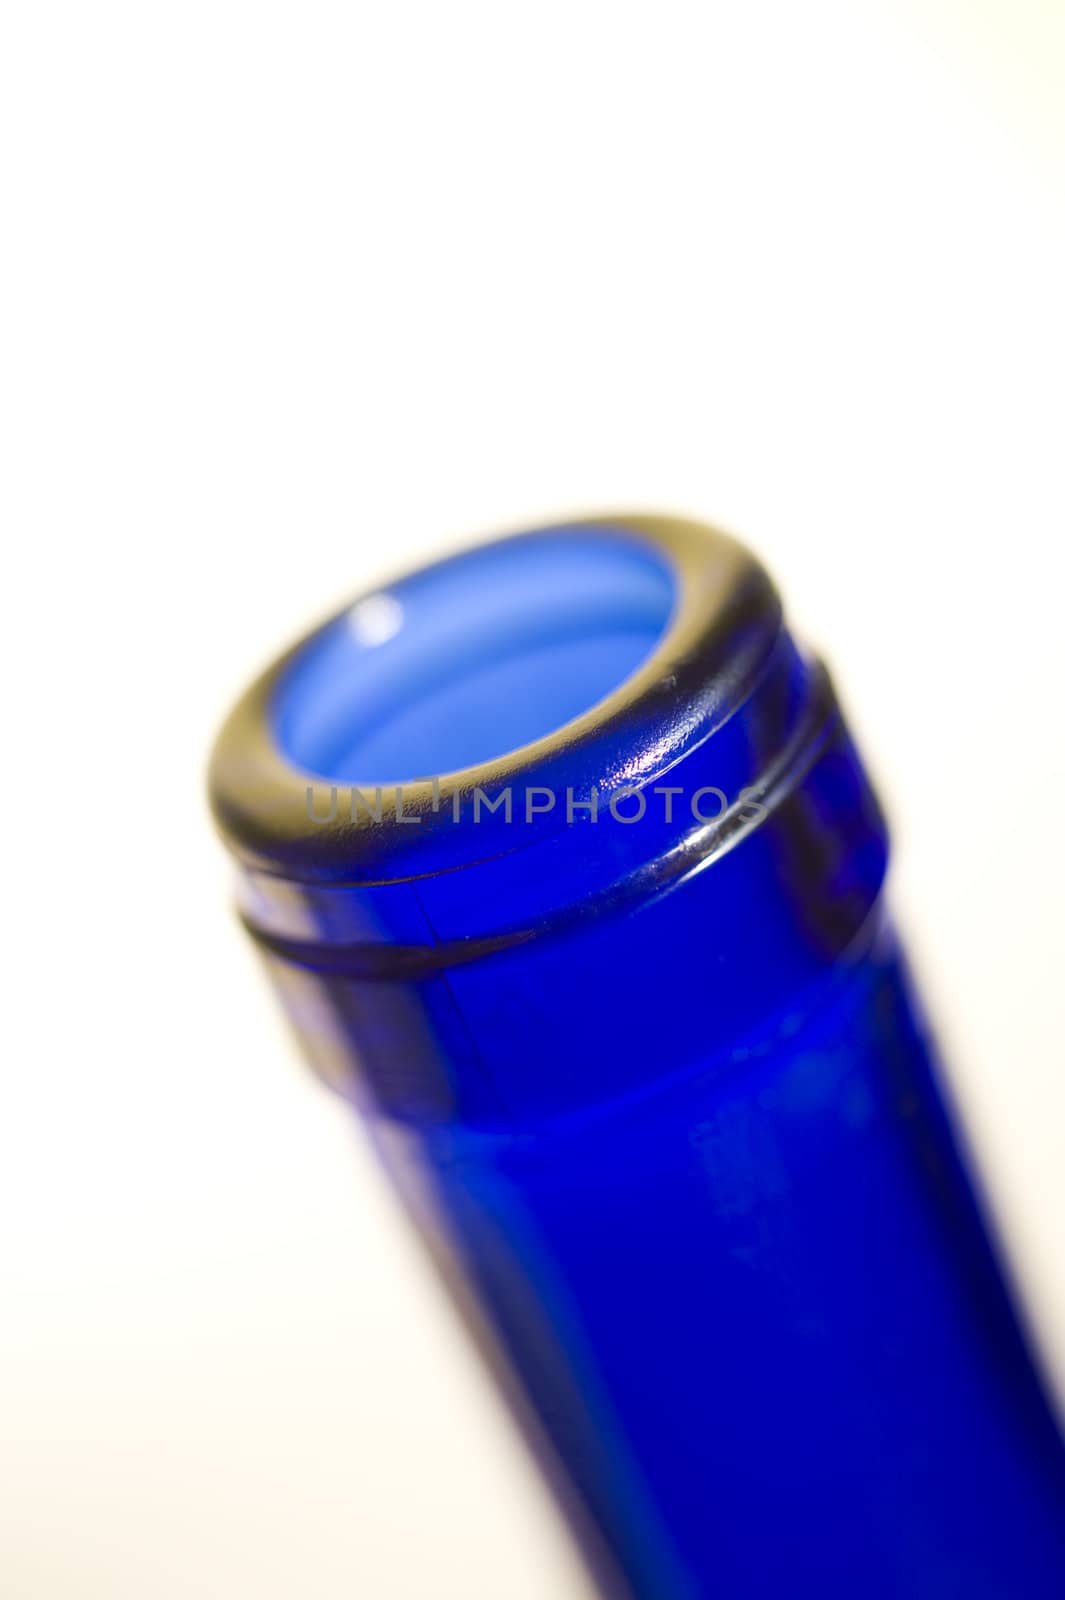 Blue bottle by Alenmax